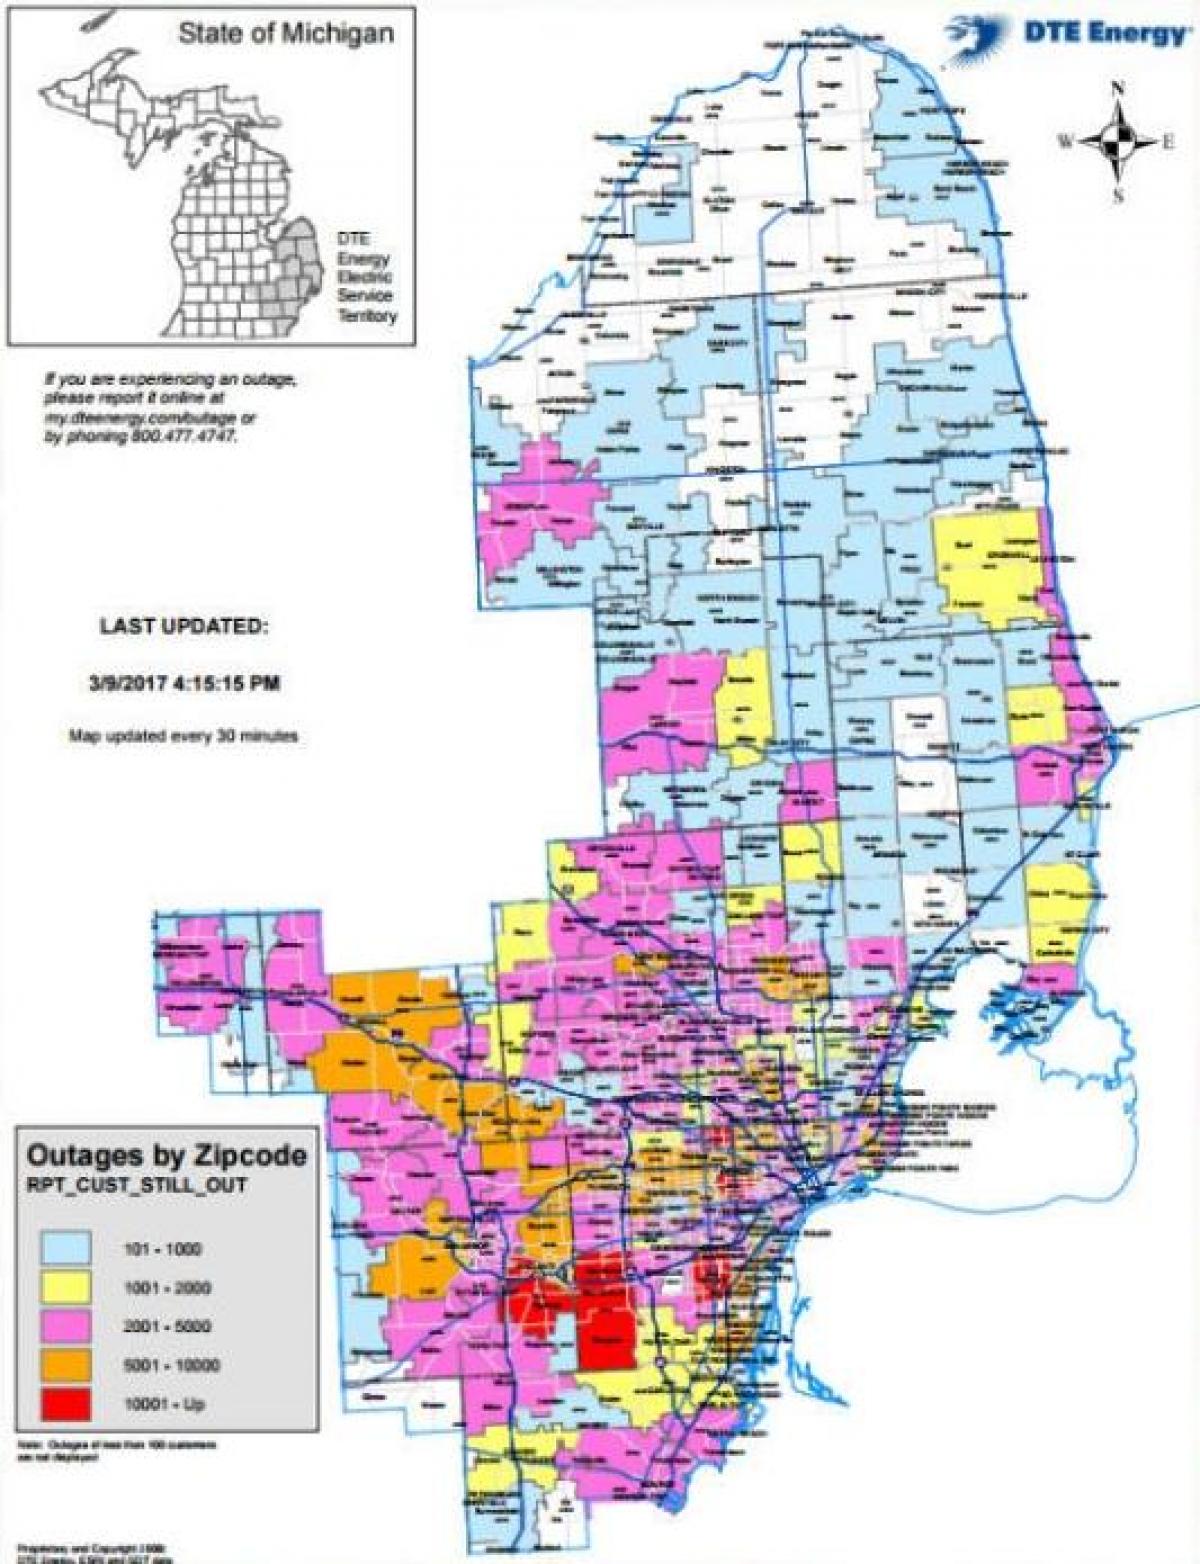 Detroit edison caída de enerxía mapa